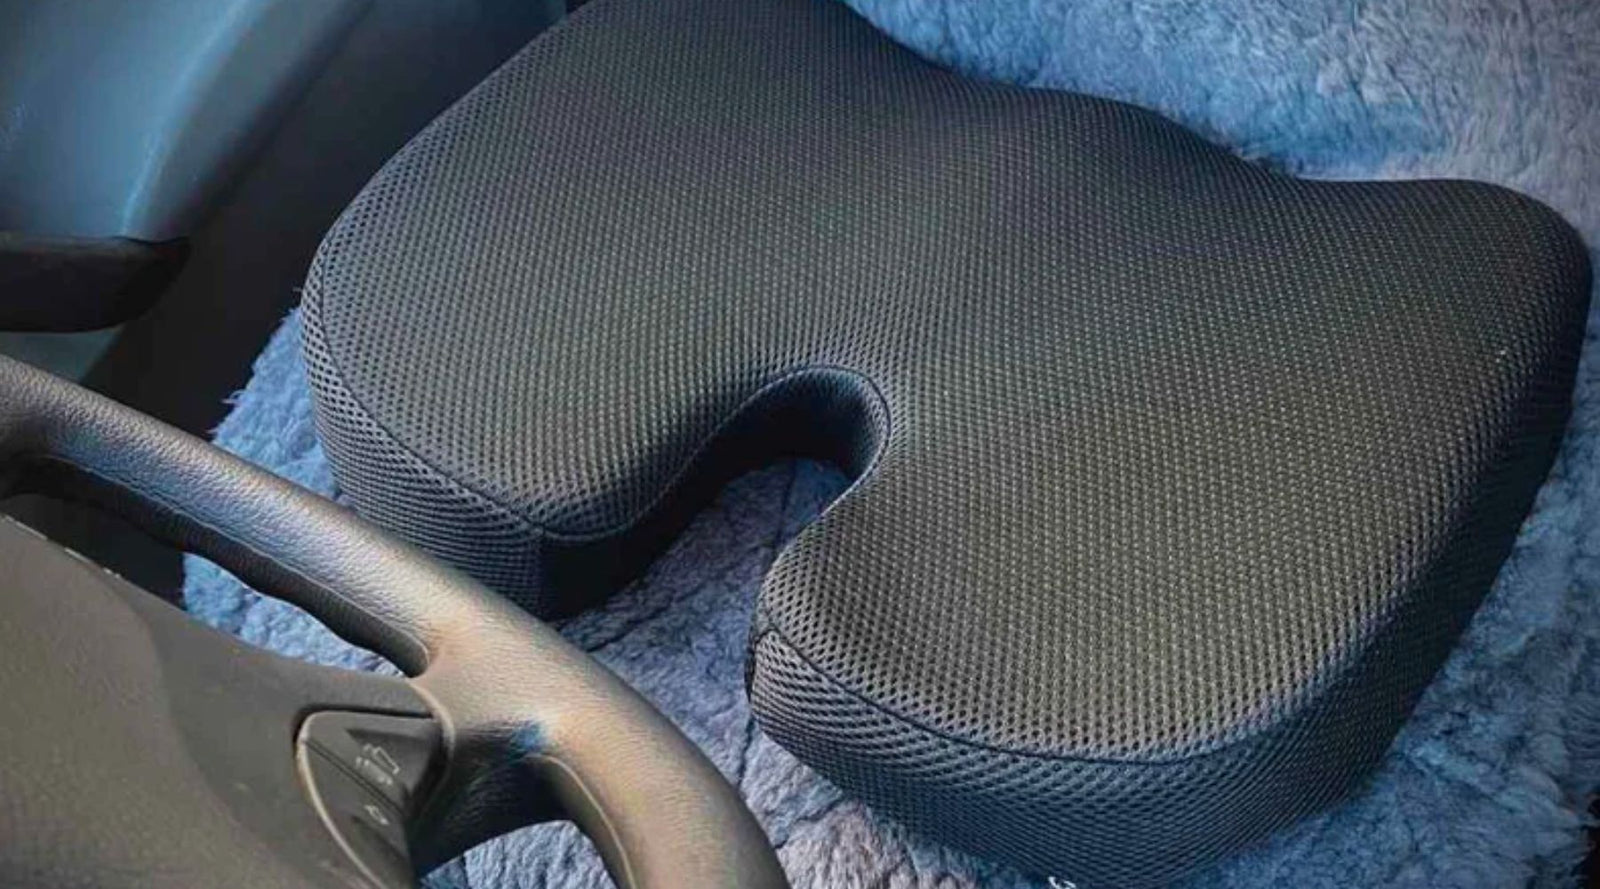 Memory Foam Car Seat Cushion